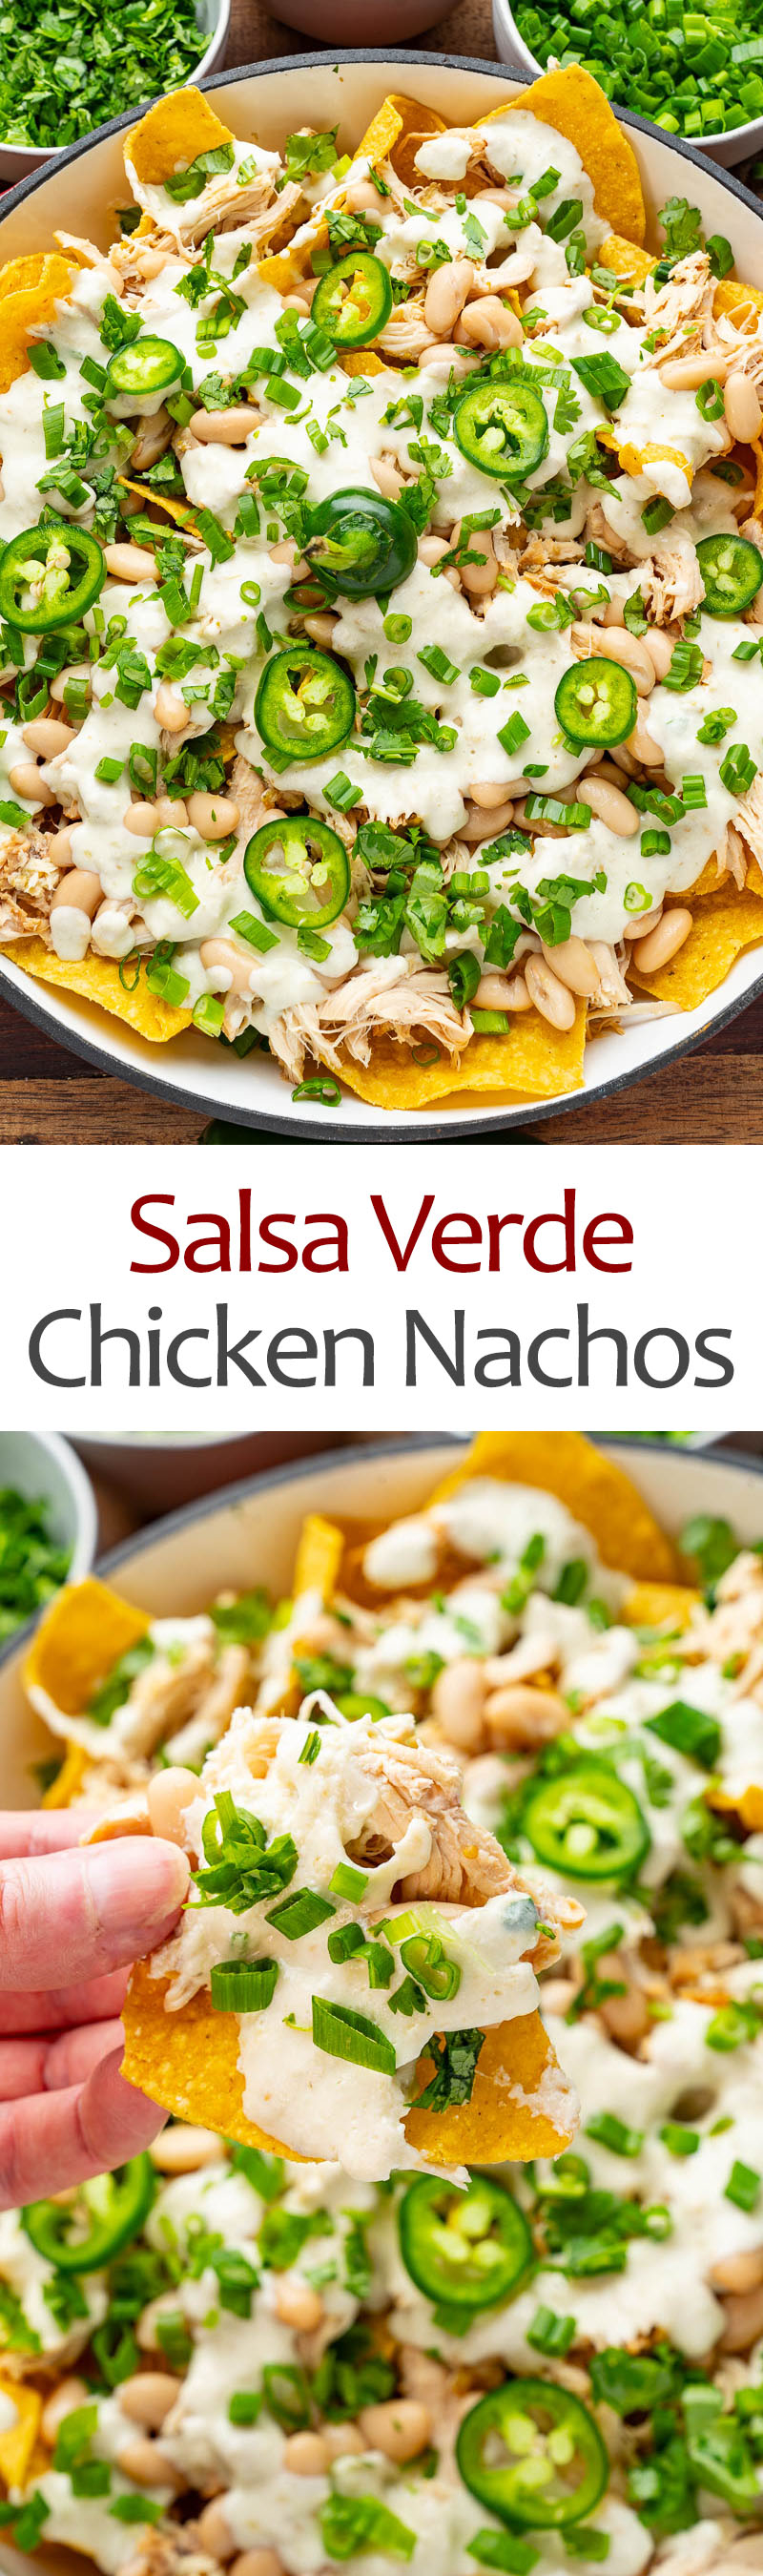 Salsa Verde Chicken Nachos